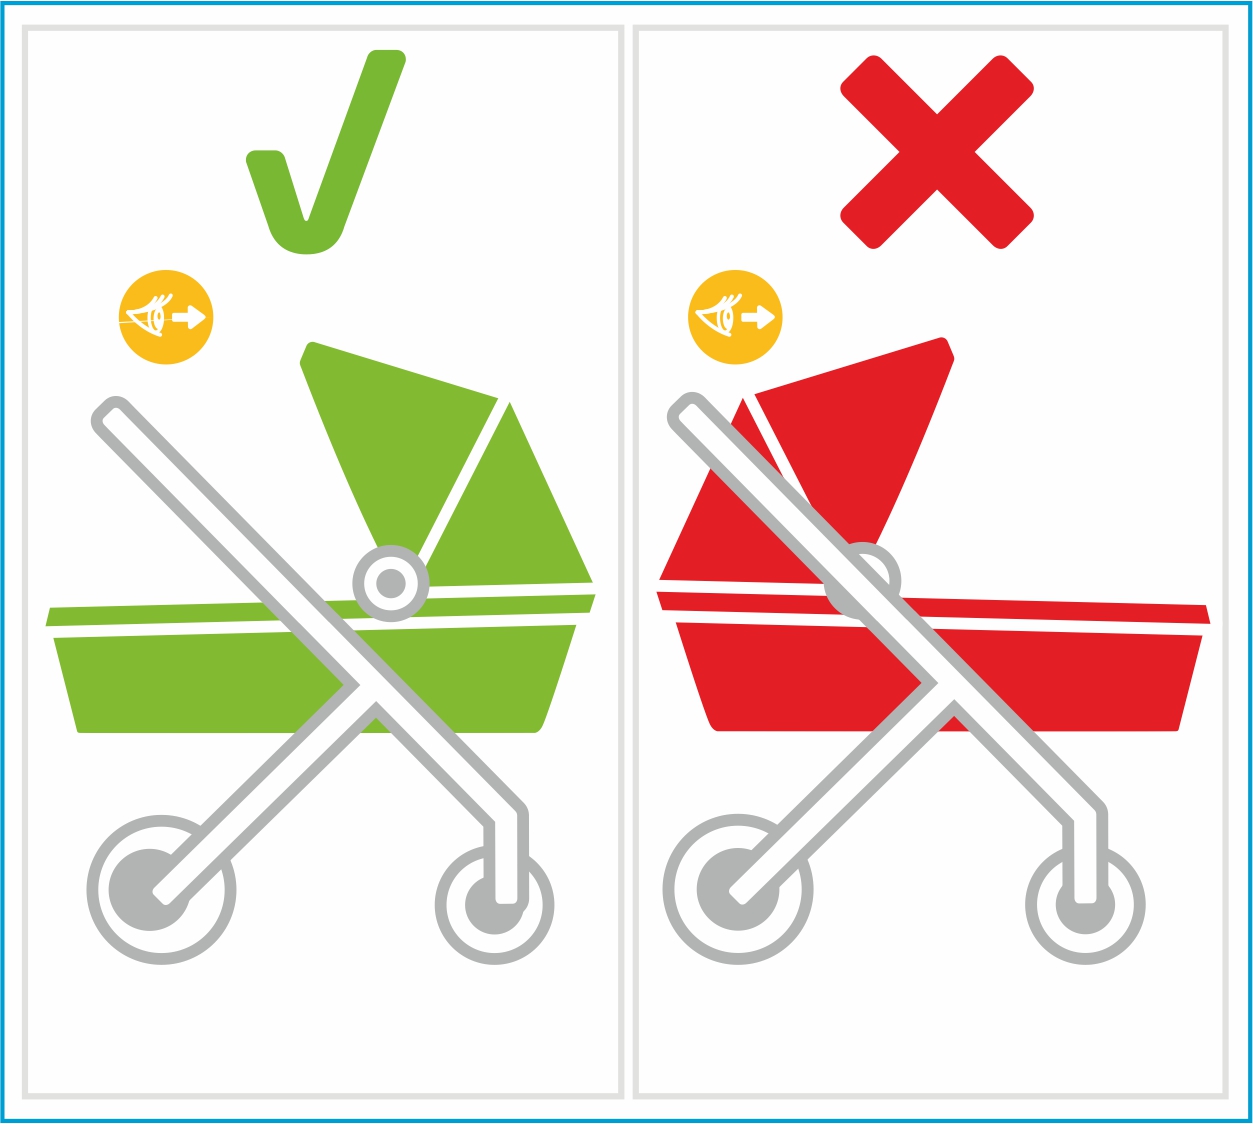 Инструкция к Maxi-Cosi Jade Прогулочная детская коляска и автокресло